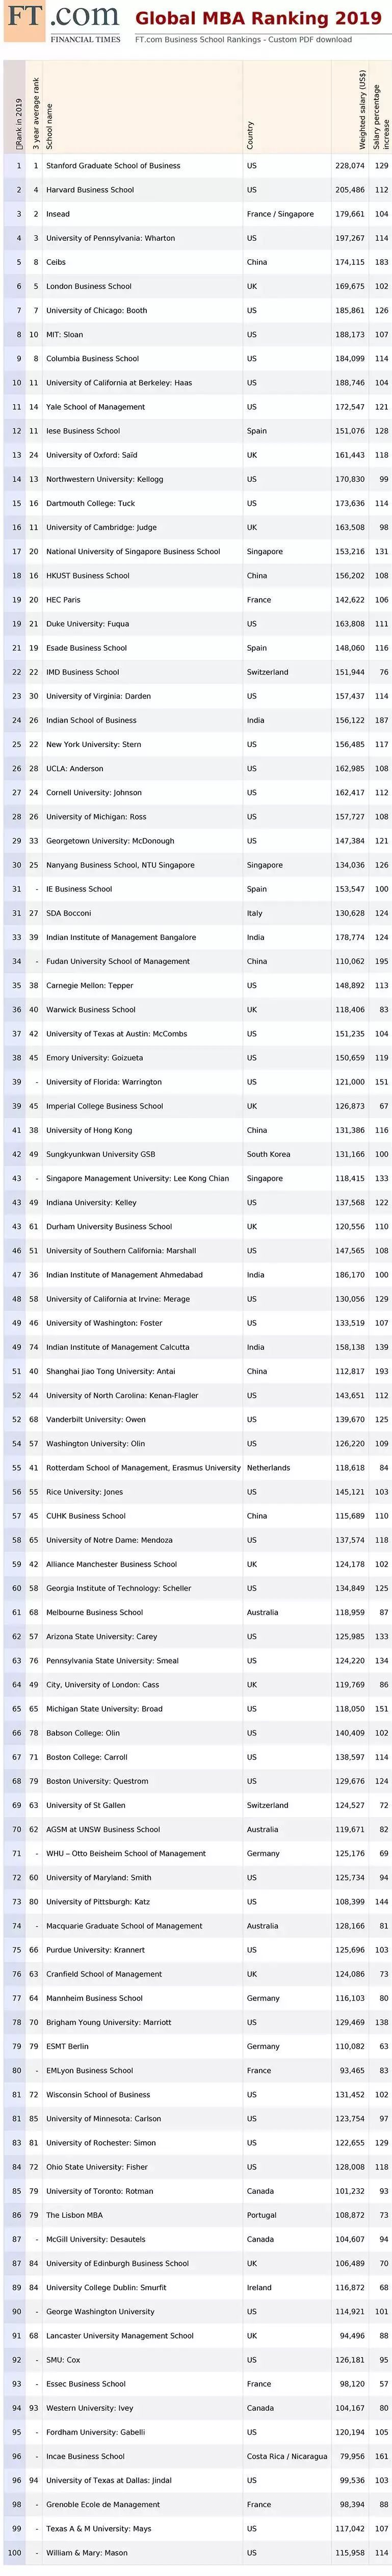 2019年FT全球MBA课程百强榜单